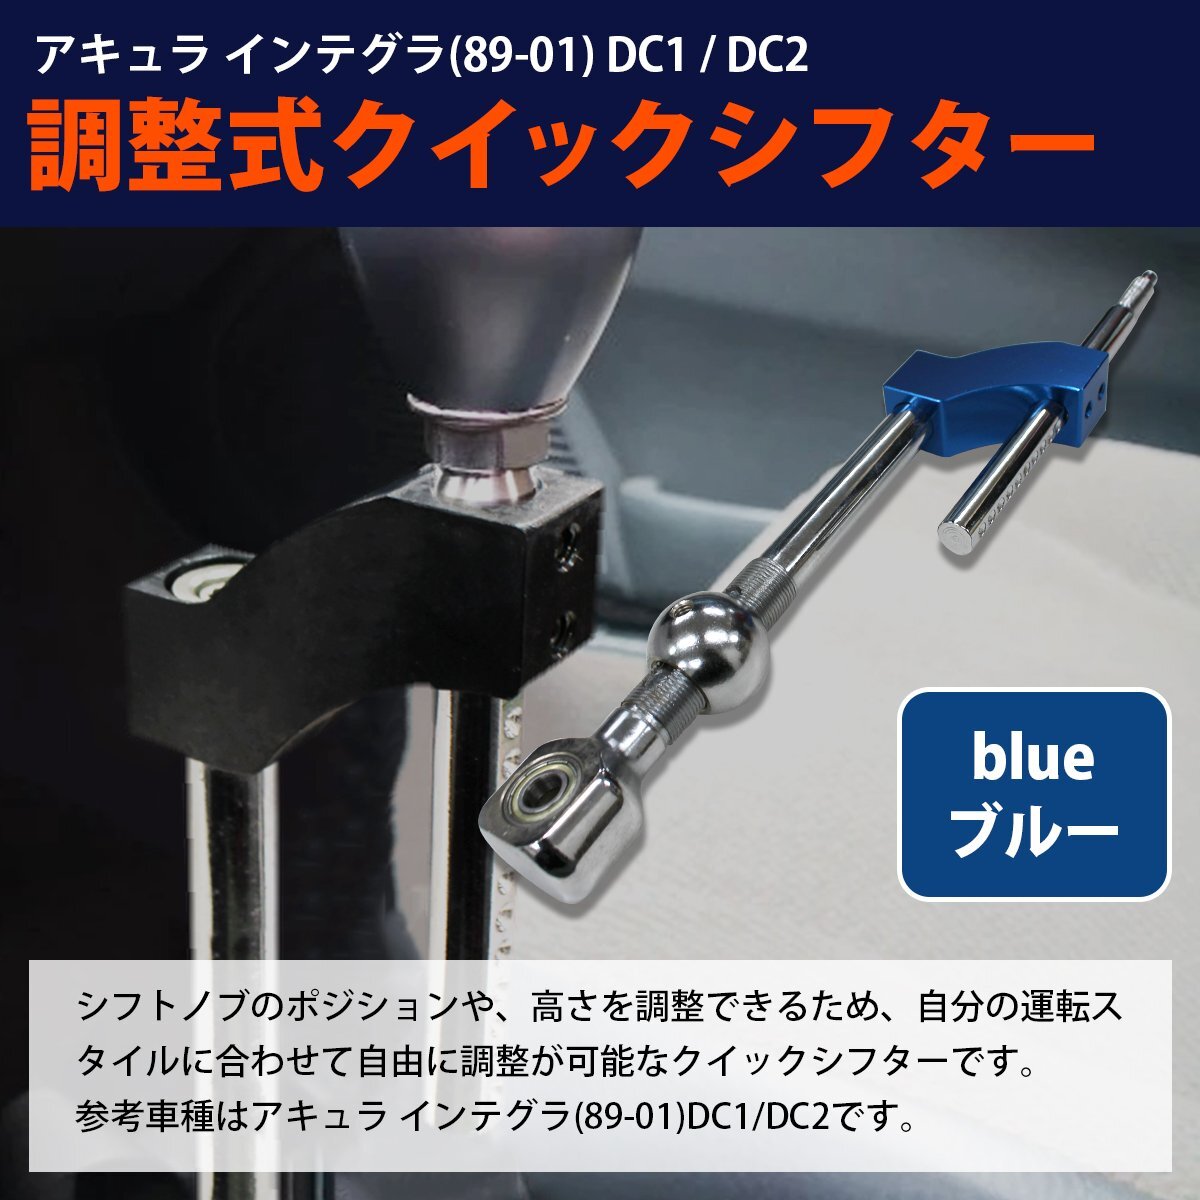 【 доставка бесплатно 】 синий / голубой  регулируемый  ... новая модель   Civic  EK9 EK4  короткий   ... крышка  ... ...  коробка передач  ... крышка  ...  дрифт 